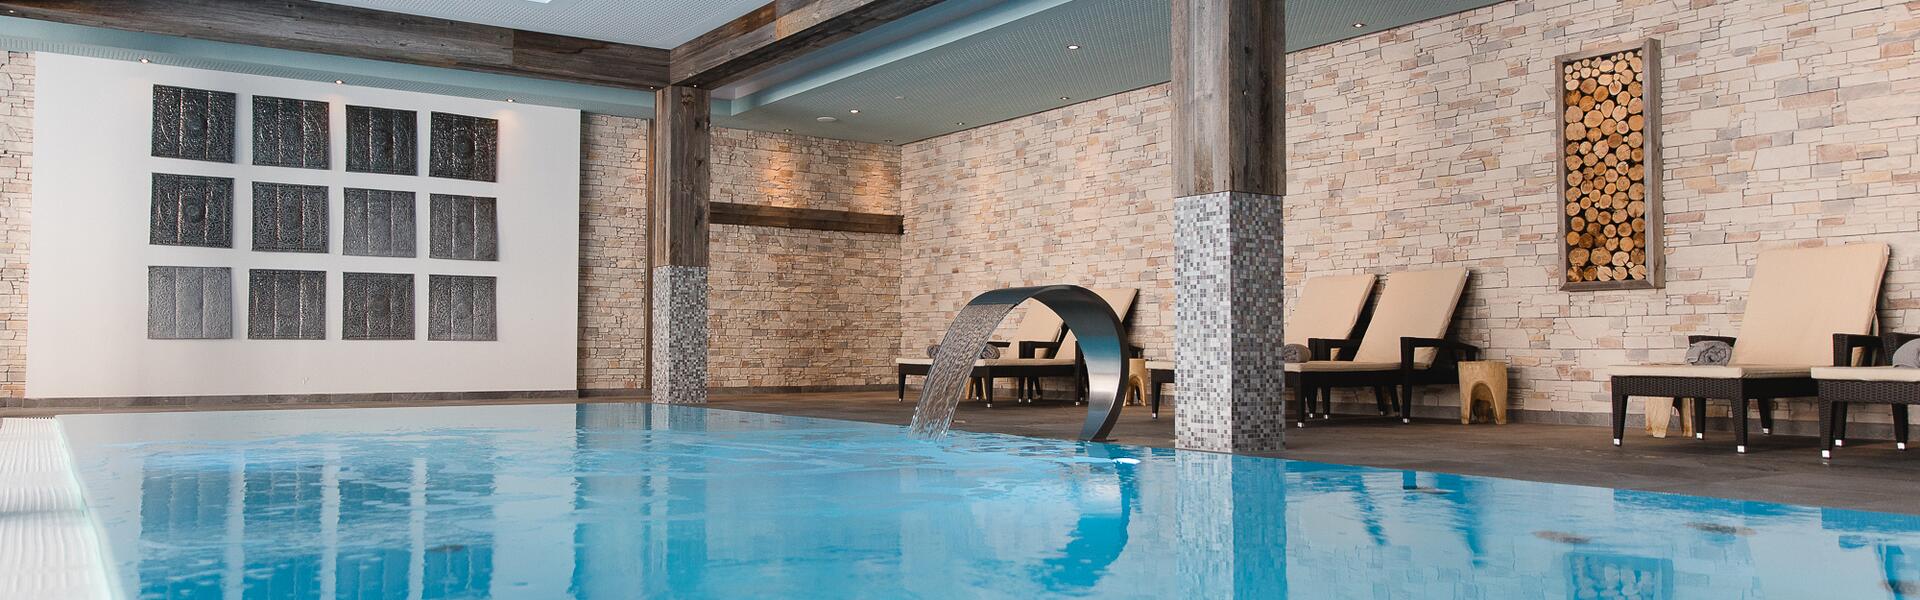 wildkogel resort indoor pool